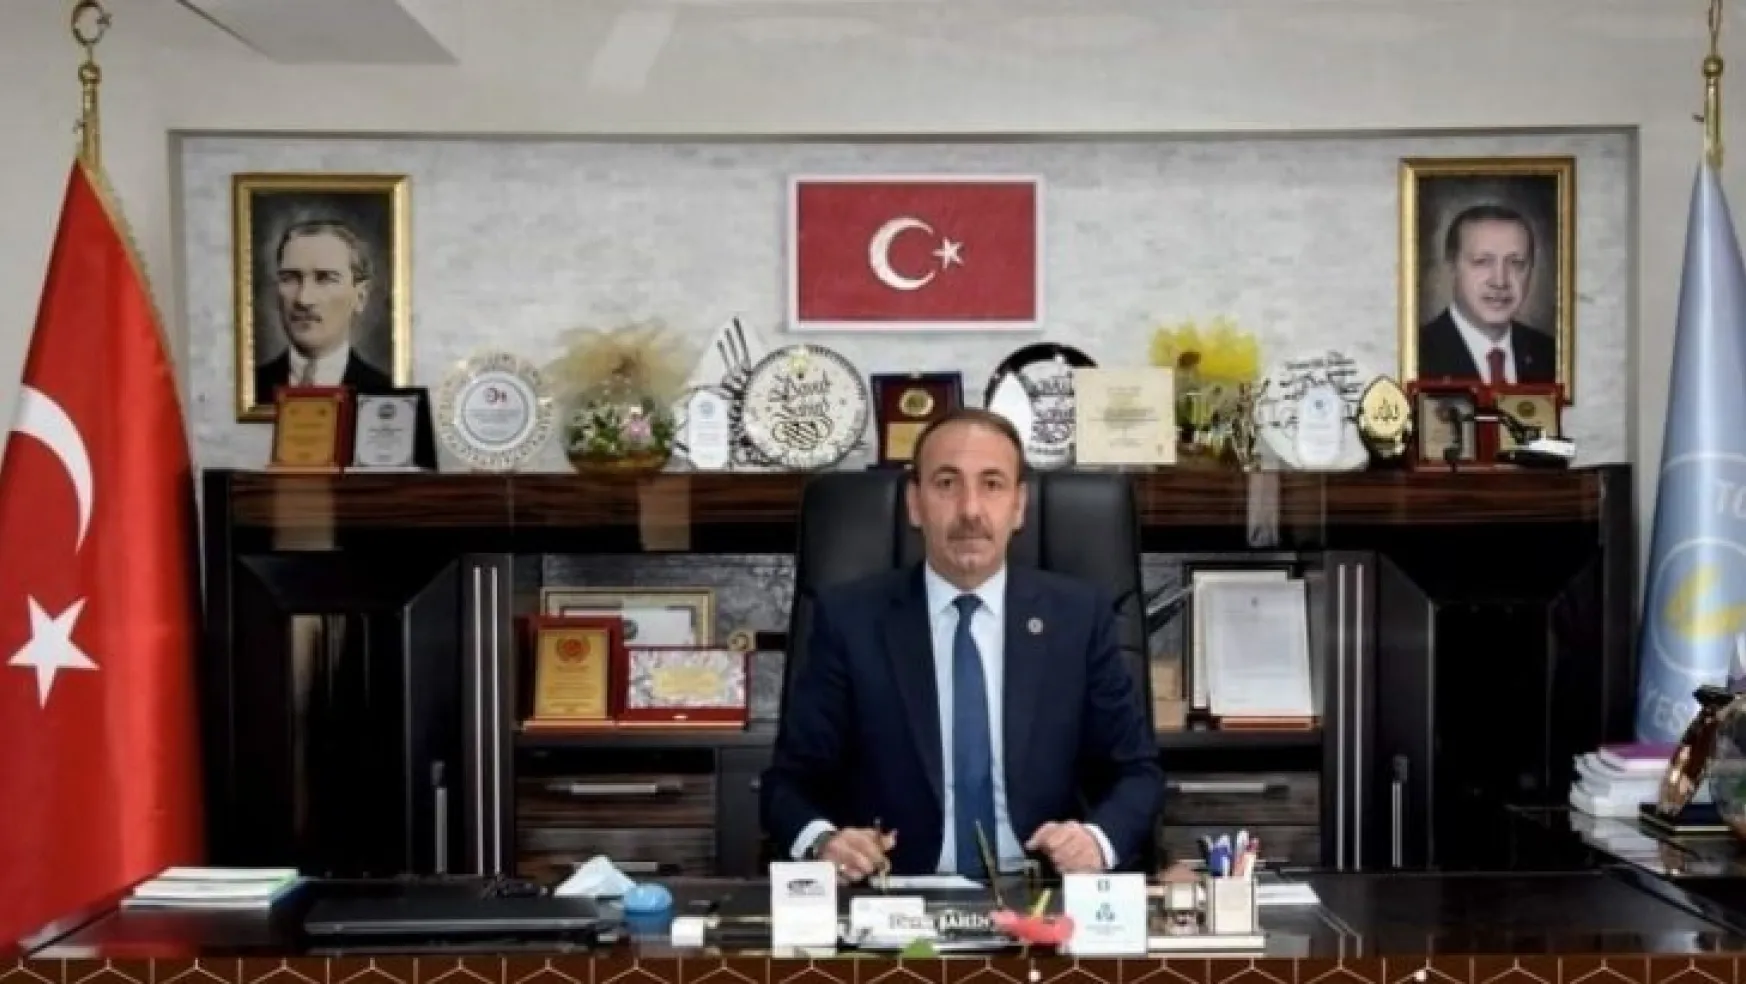 Tomarza Belediye Başkanı Şahin: 'Kefenini giymiş, yola çıkmış, cumhurbaşkanımızın yol arkadaşıyız'